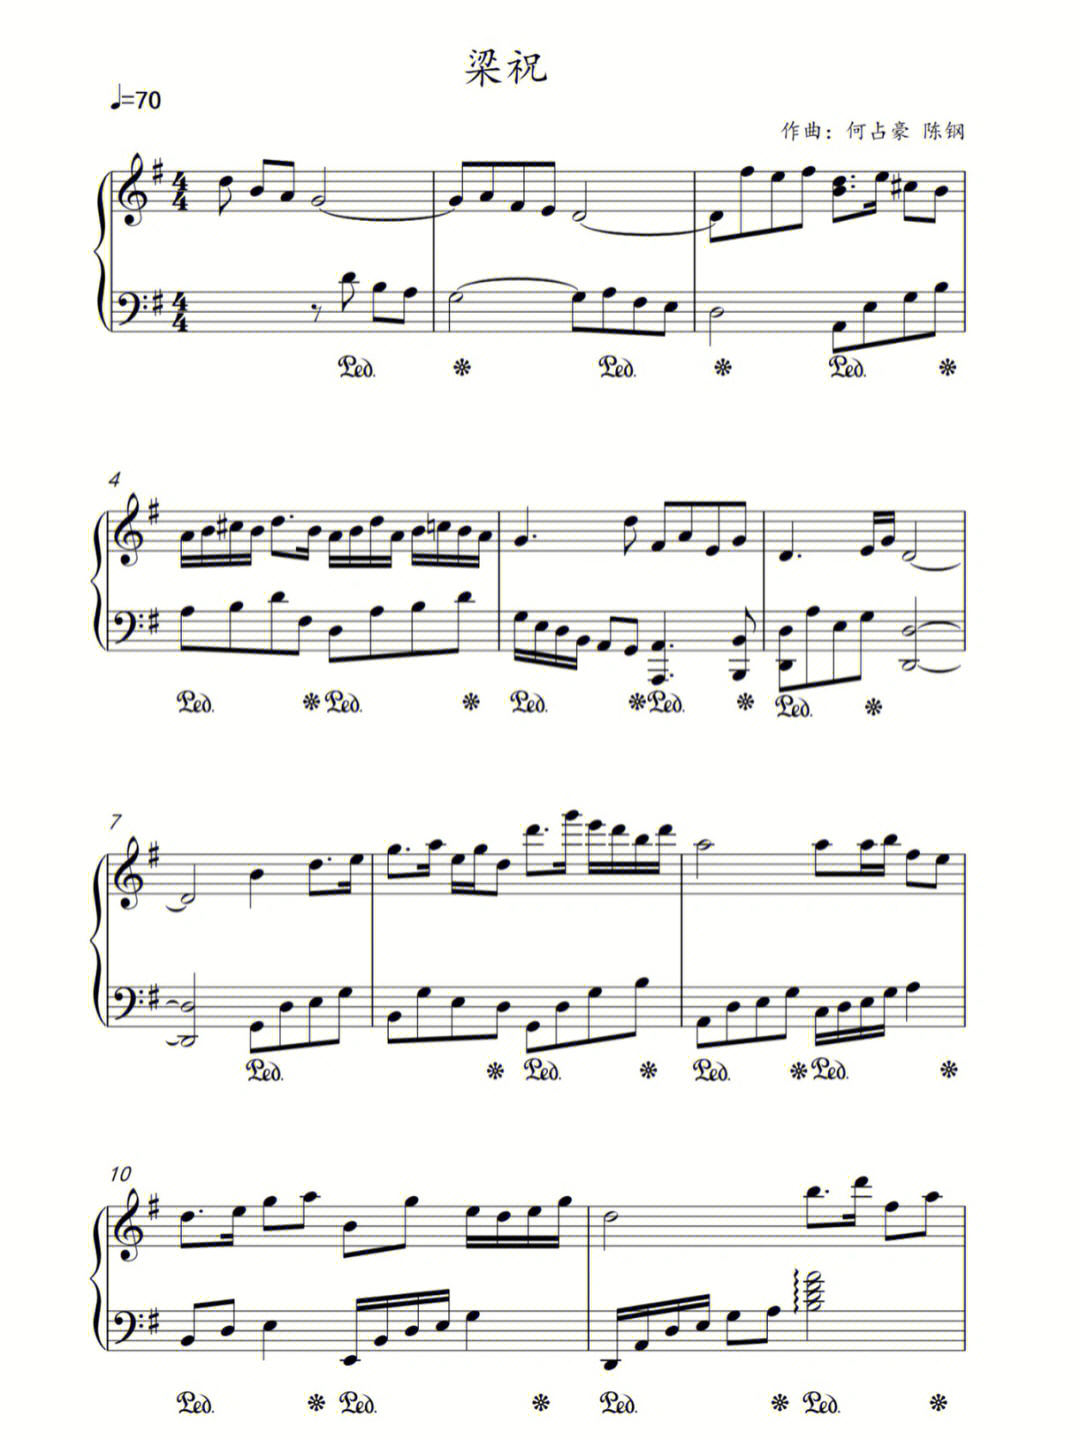 梁祝古筝钢琴合奏曲谱图片